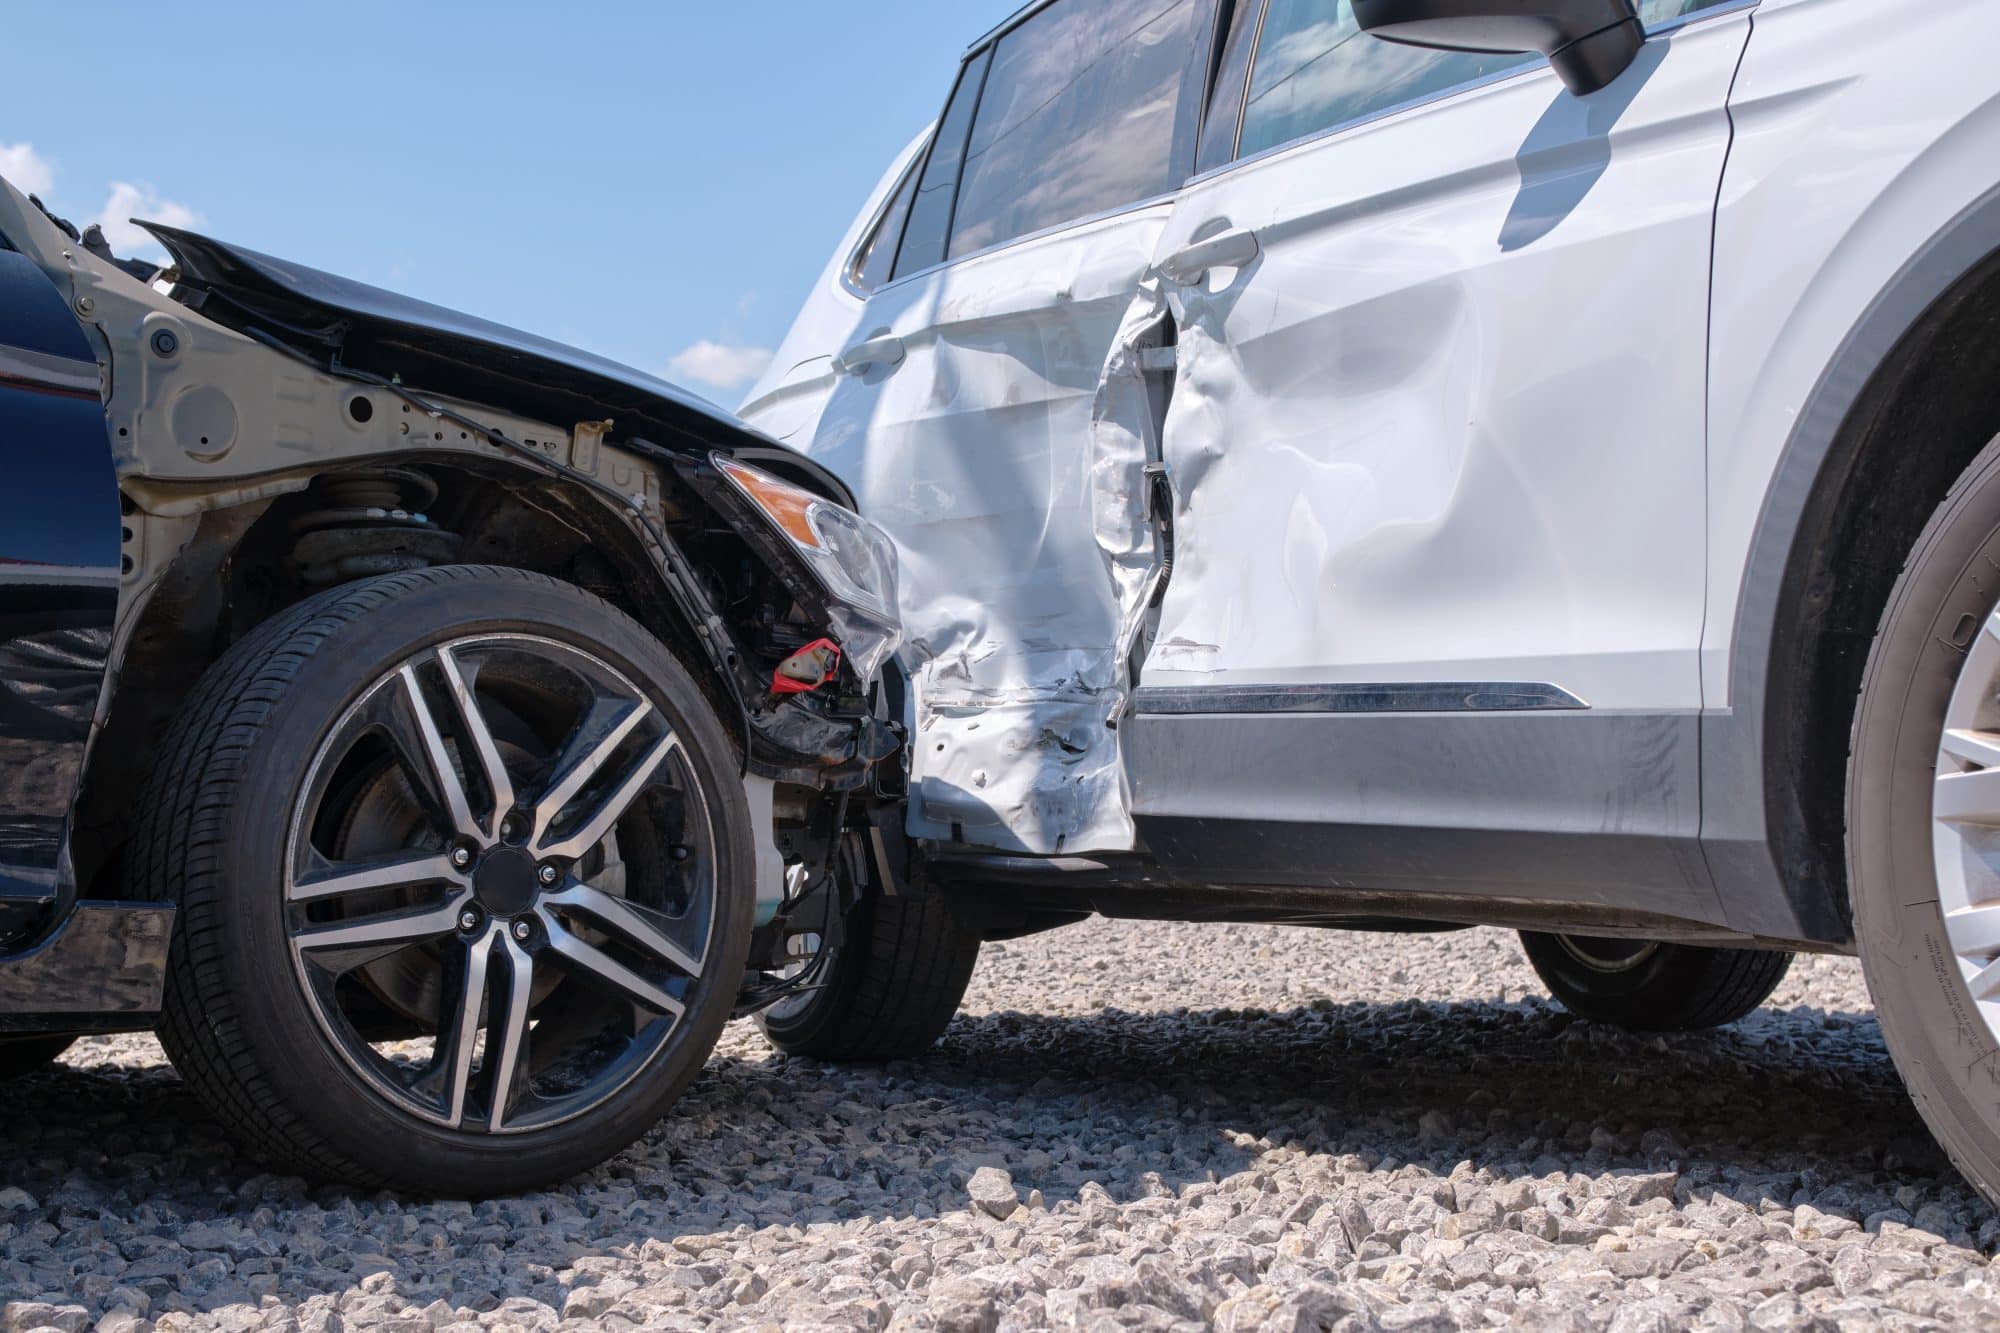 Black Uber t-bones a white car causing damage to both vehicles in Orange Beach, Alabama